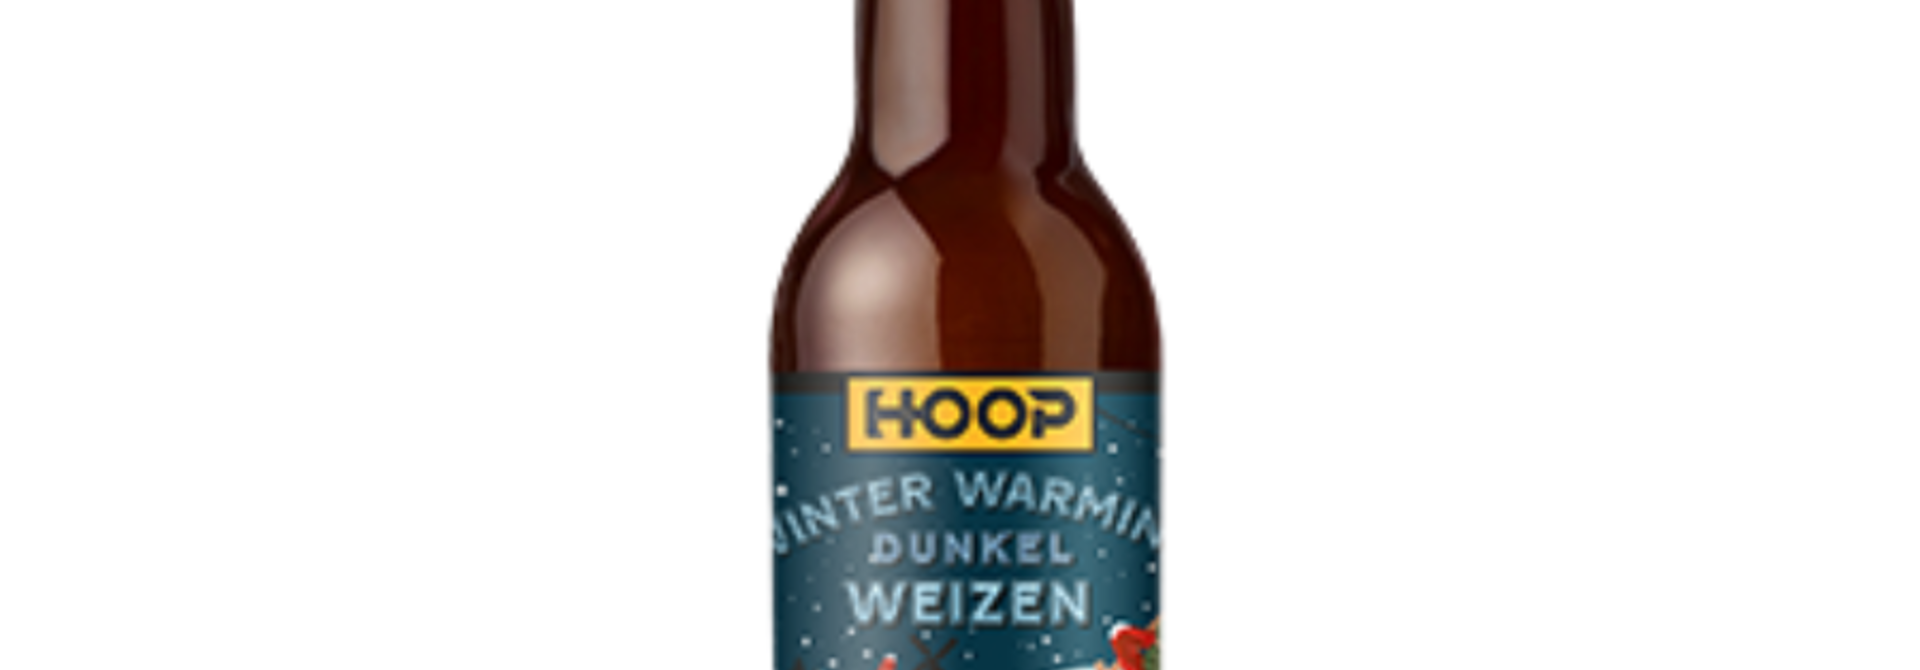 Brouwerij Hoop Winter Warming Dunkel Weizen 33cl 7%